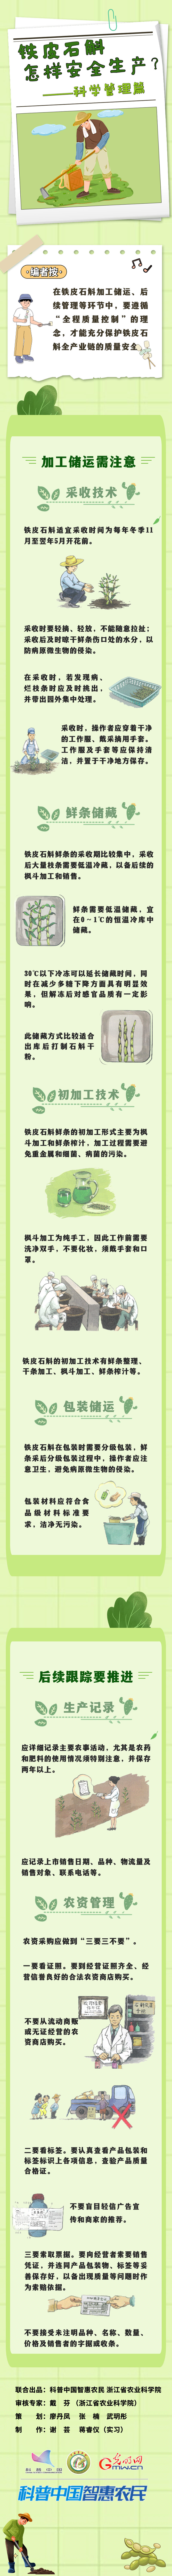 【智惠农民】铁皮石斛怎样安全生产？——科学管理篇